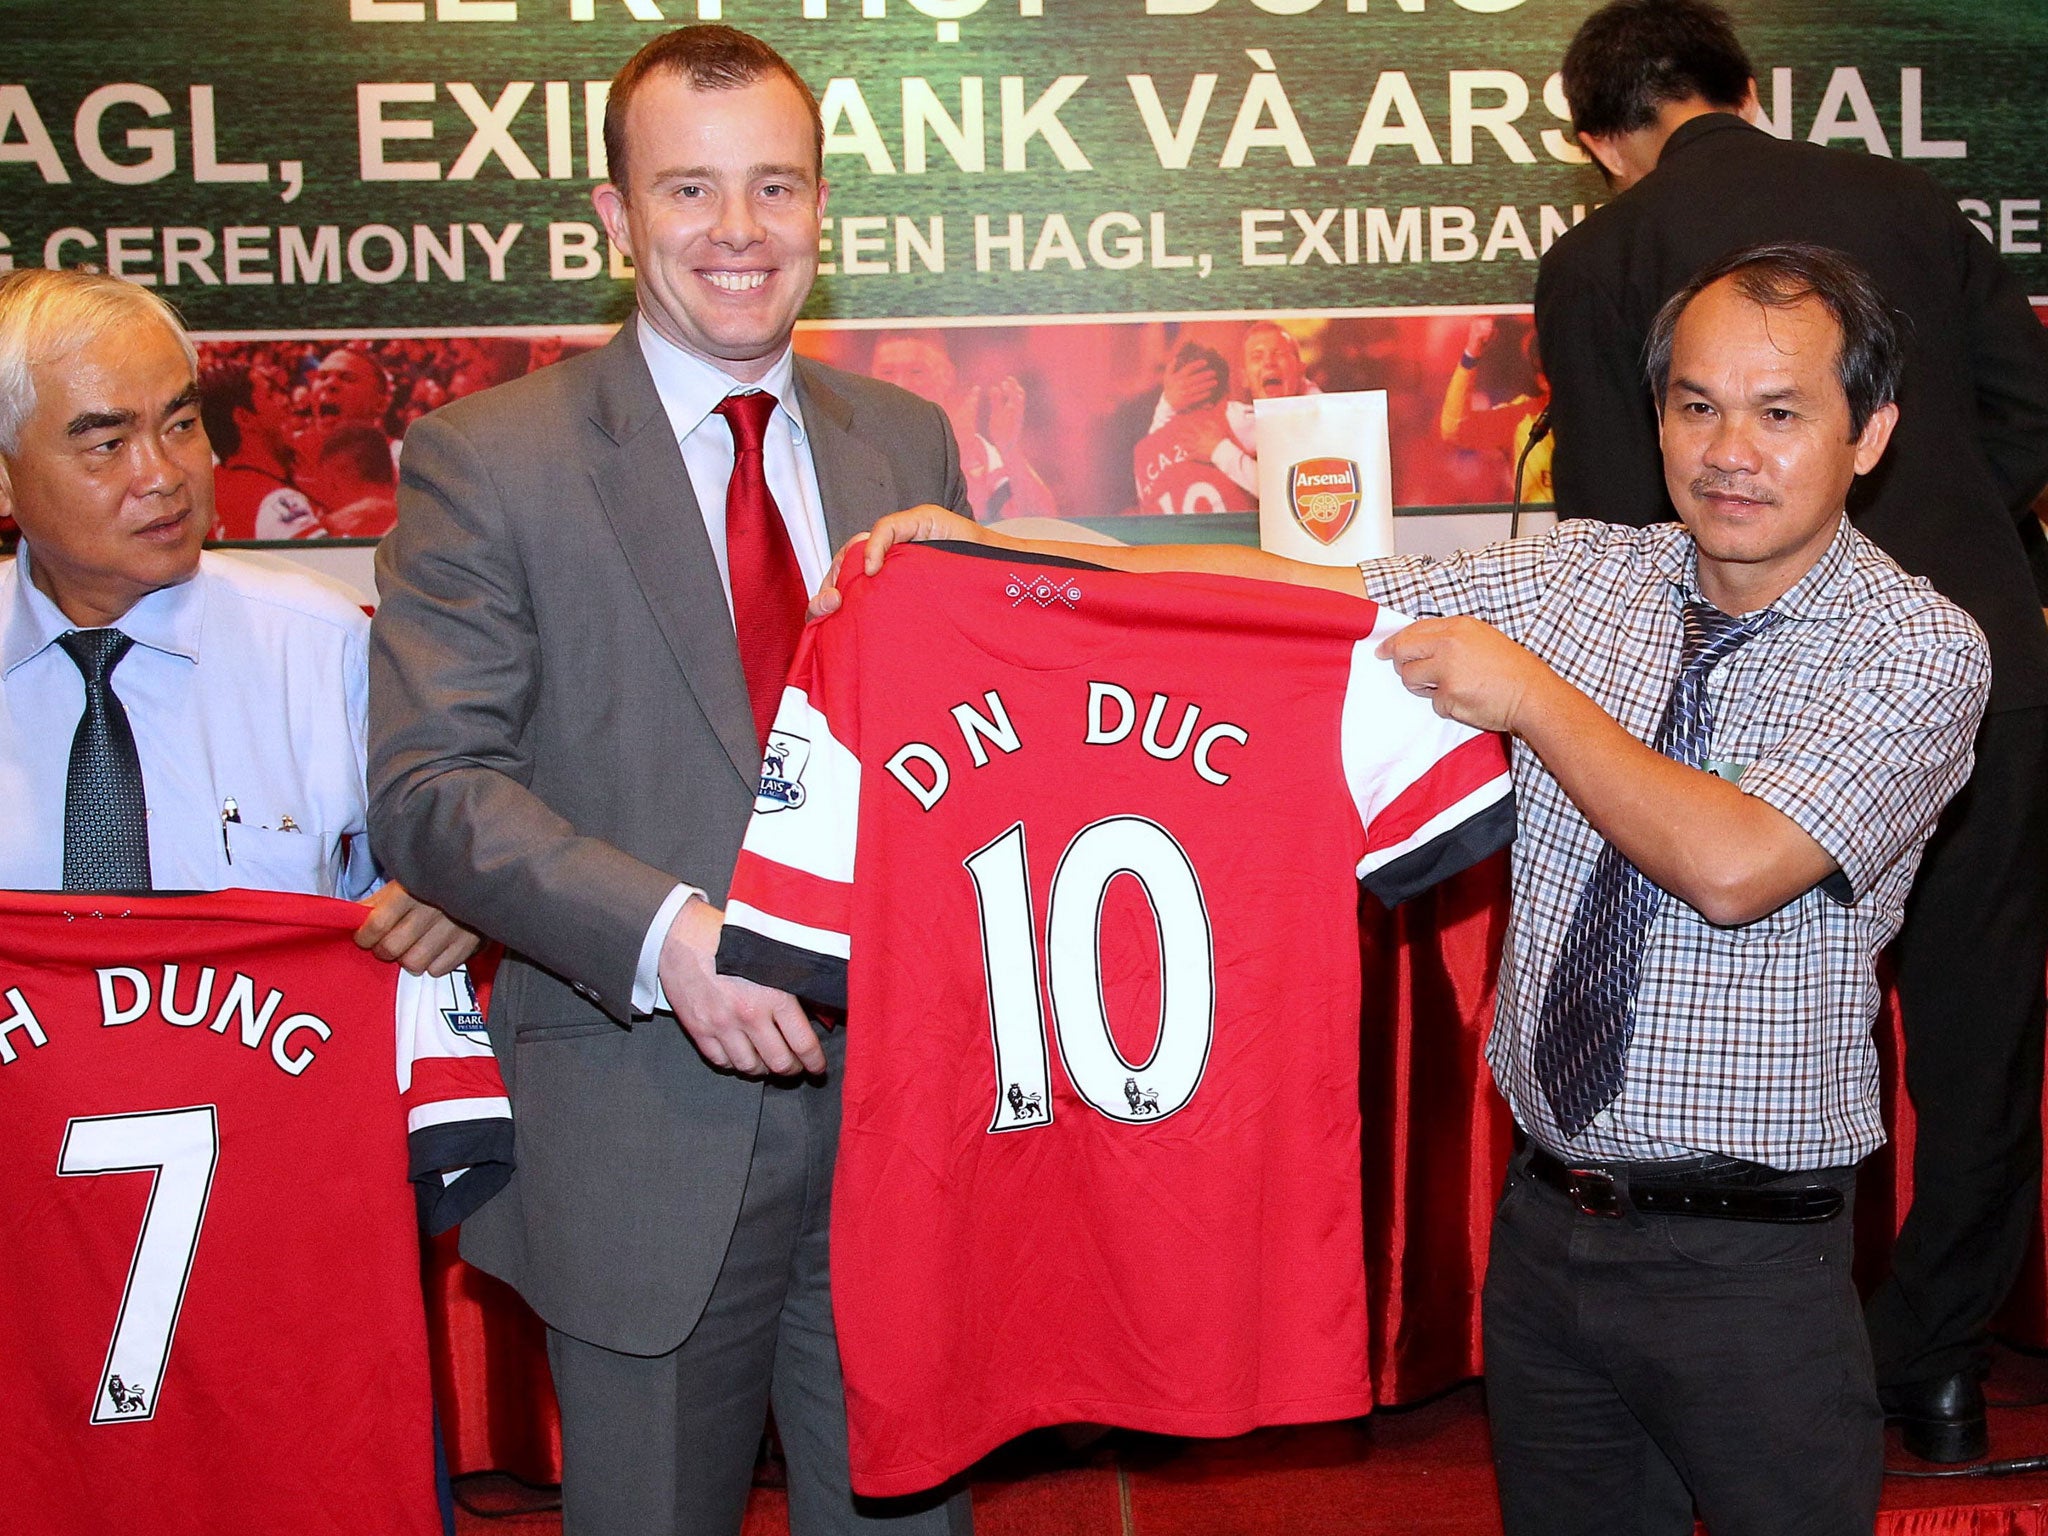 An Arsenal official offers an Gunners jersey to Doan Nguyen Duc